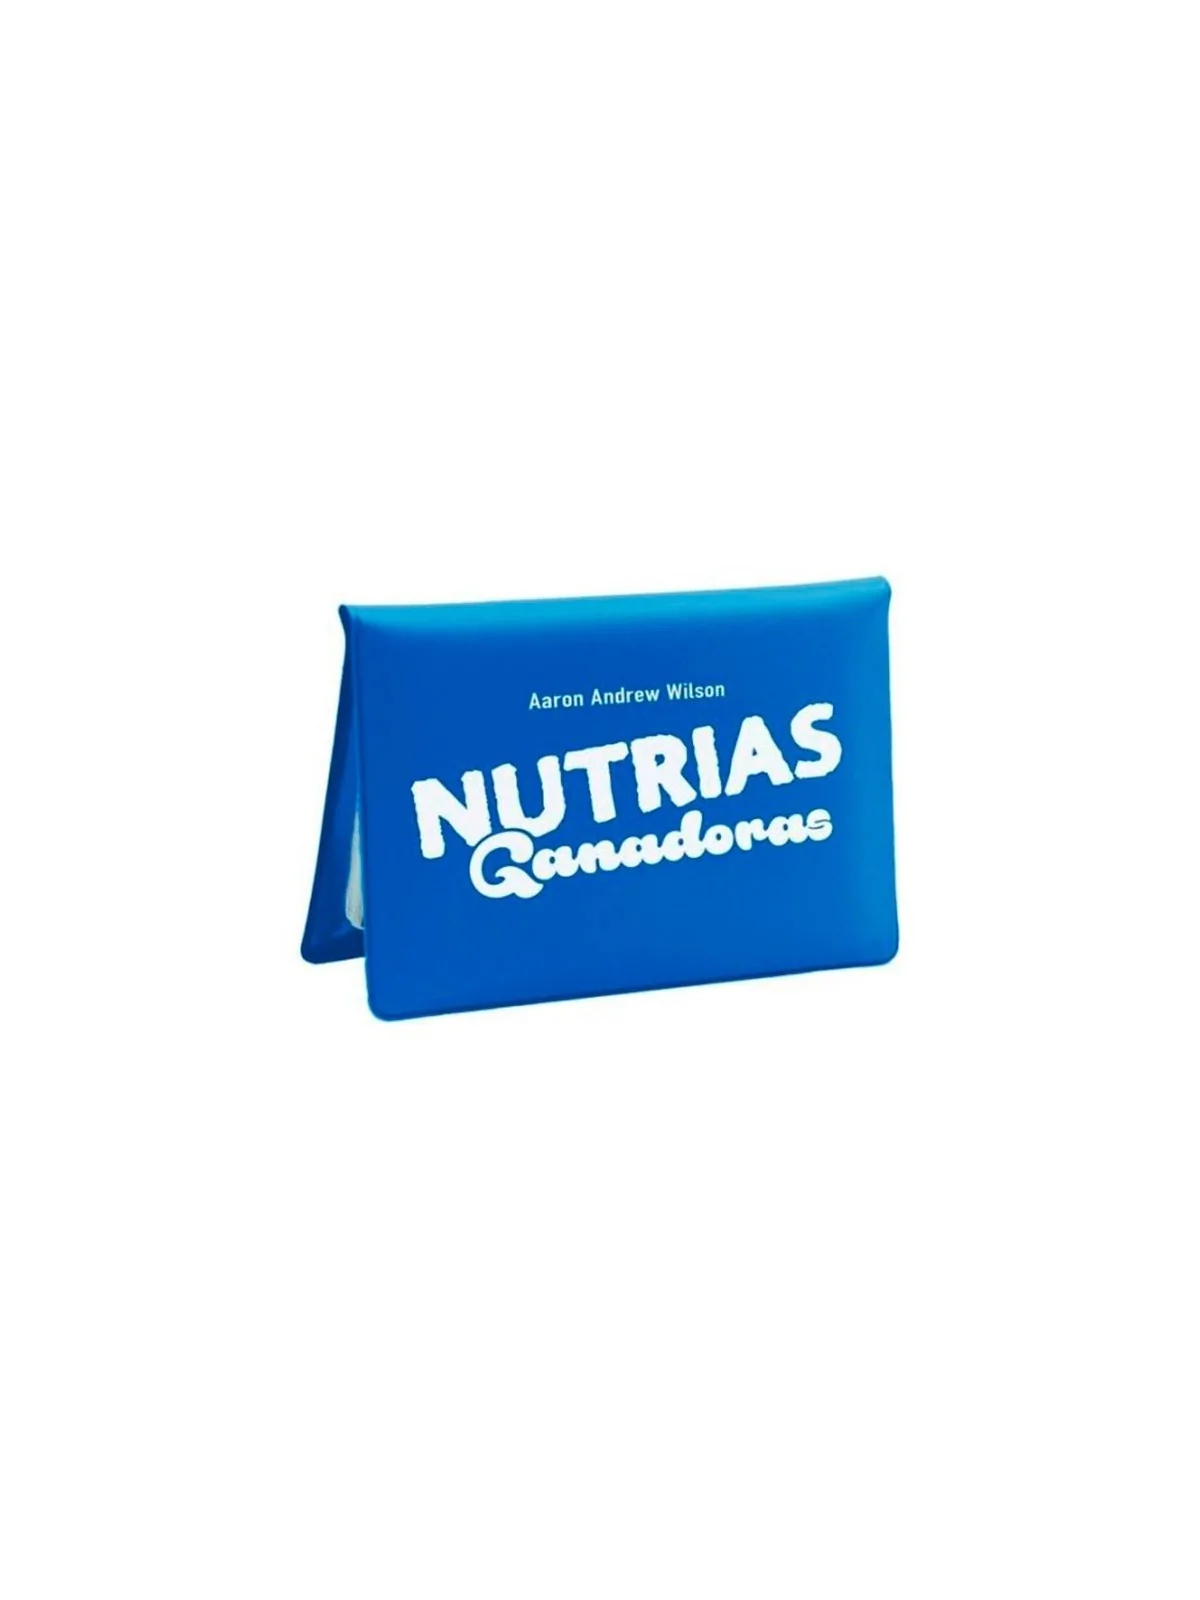 Comprar Nutrias Ganadoras barato al mejor precio 13,95 € de Salt and P